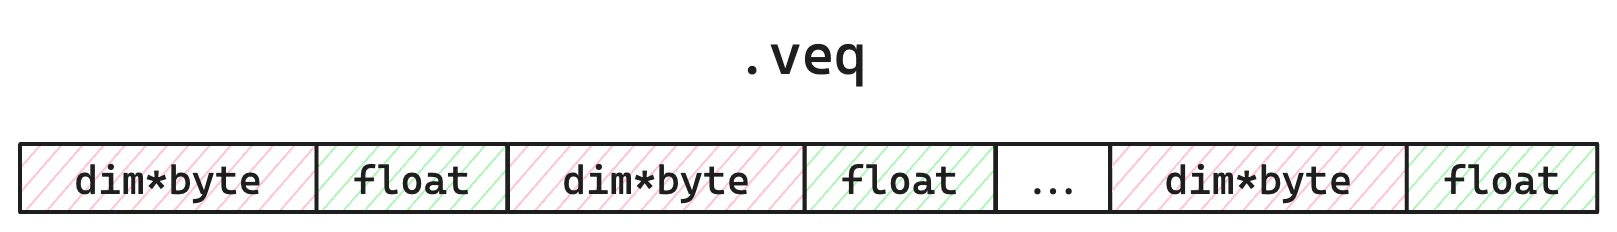 图 2：.veq 文件的简化布局。